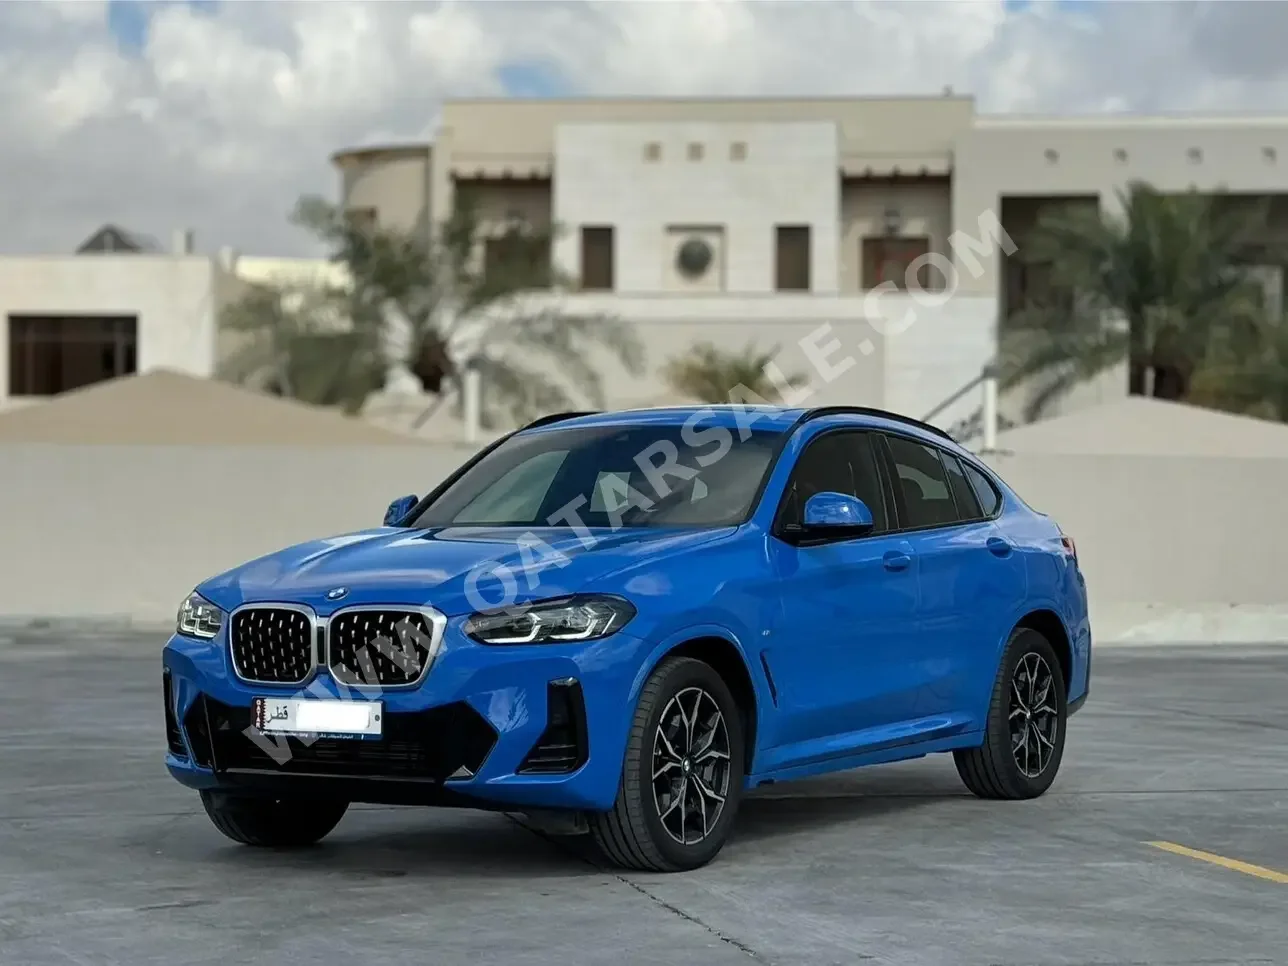 BMW  X-Series  X4  2022  Automatic  13,000 Km  6 Cylinder  Four Wheel Drive (4WD)  SUV  Blue  With Warranty